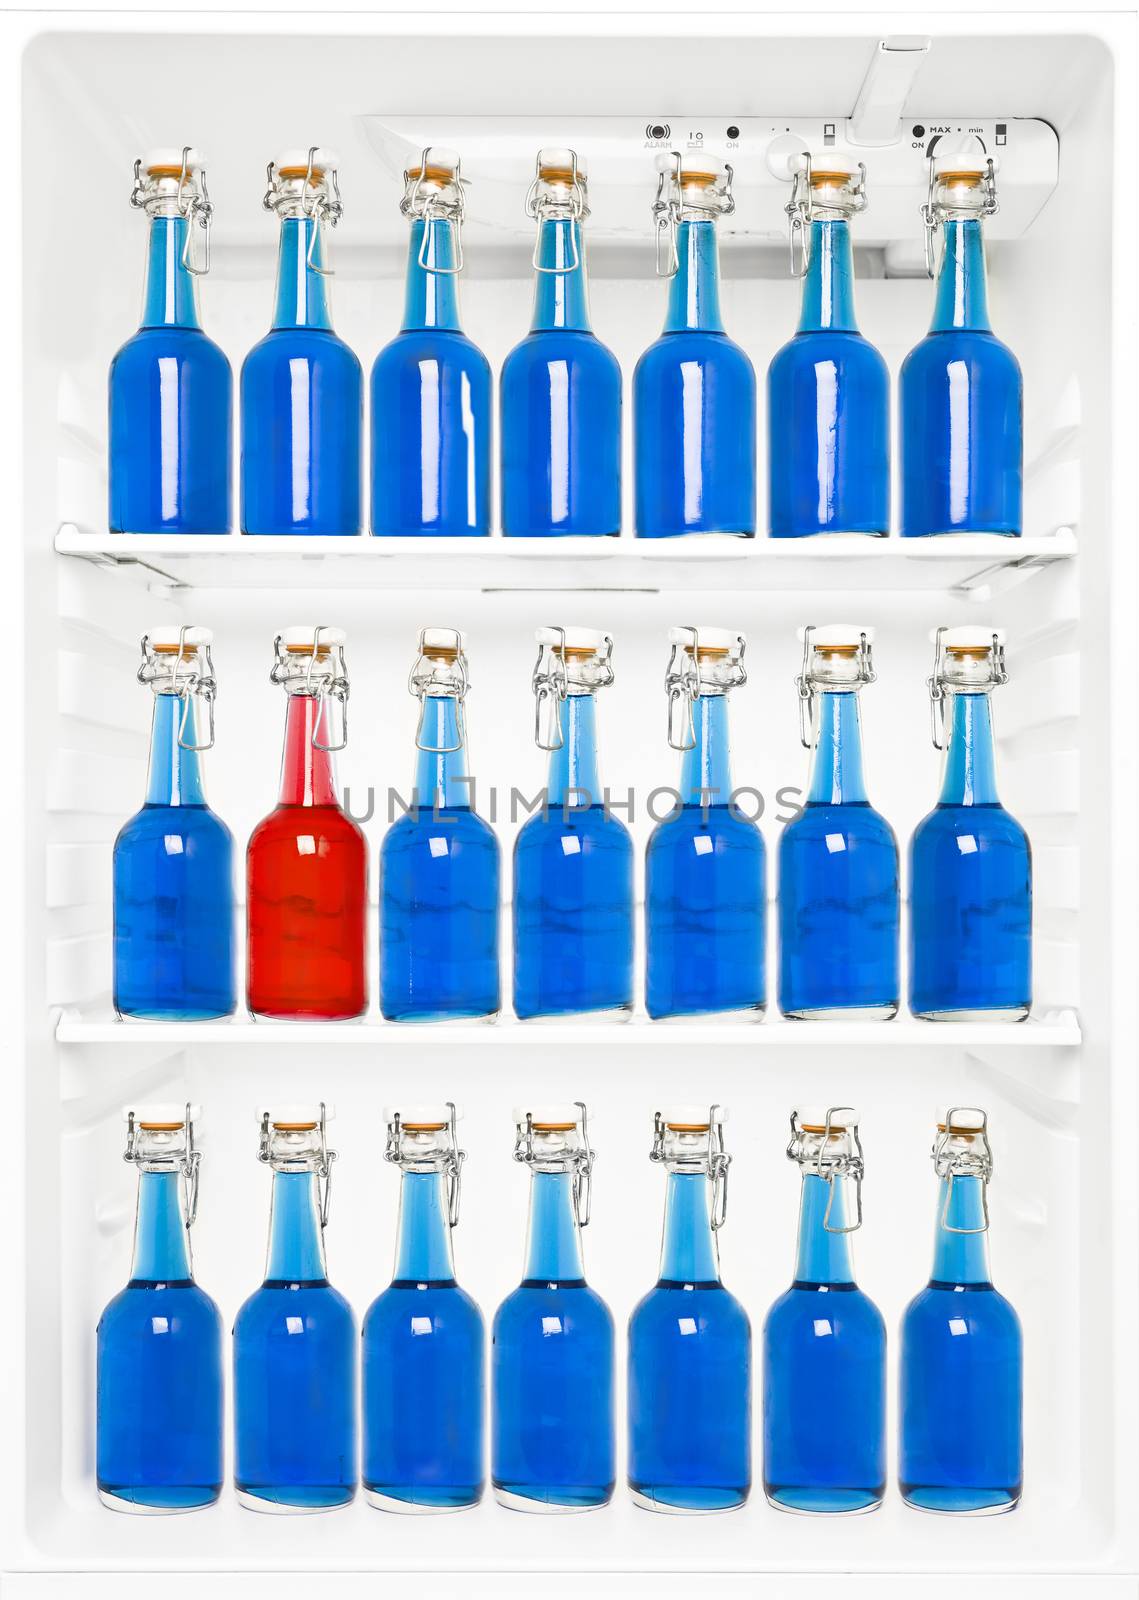 Bottles in a fridge by gemenacom